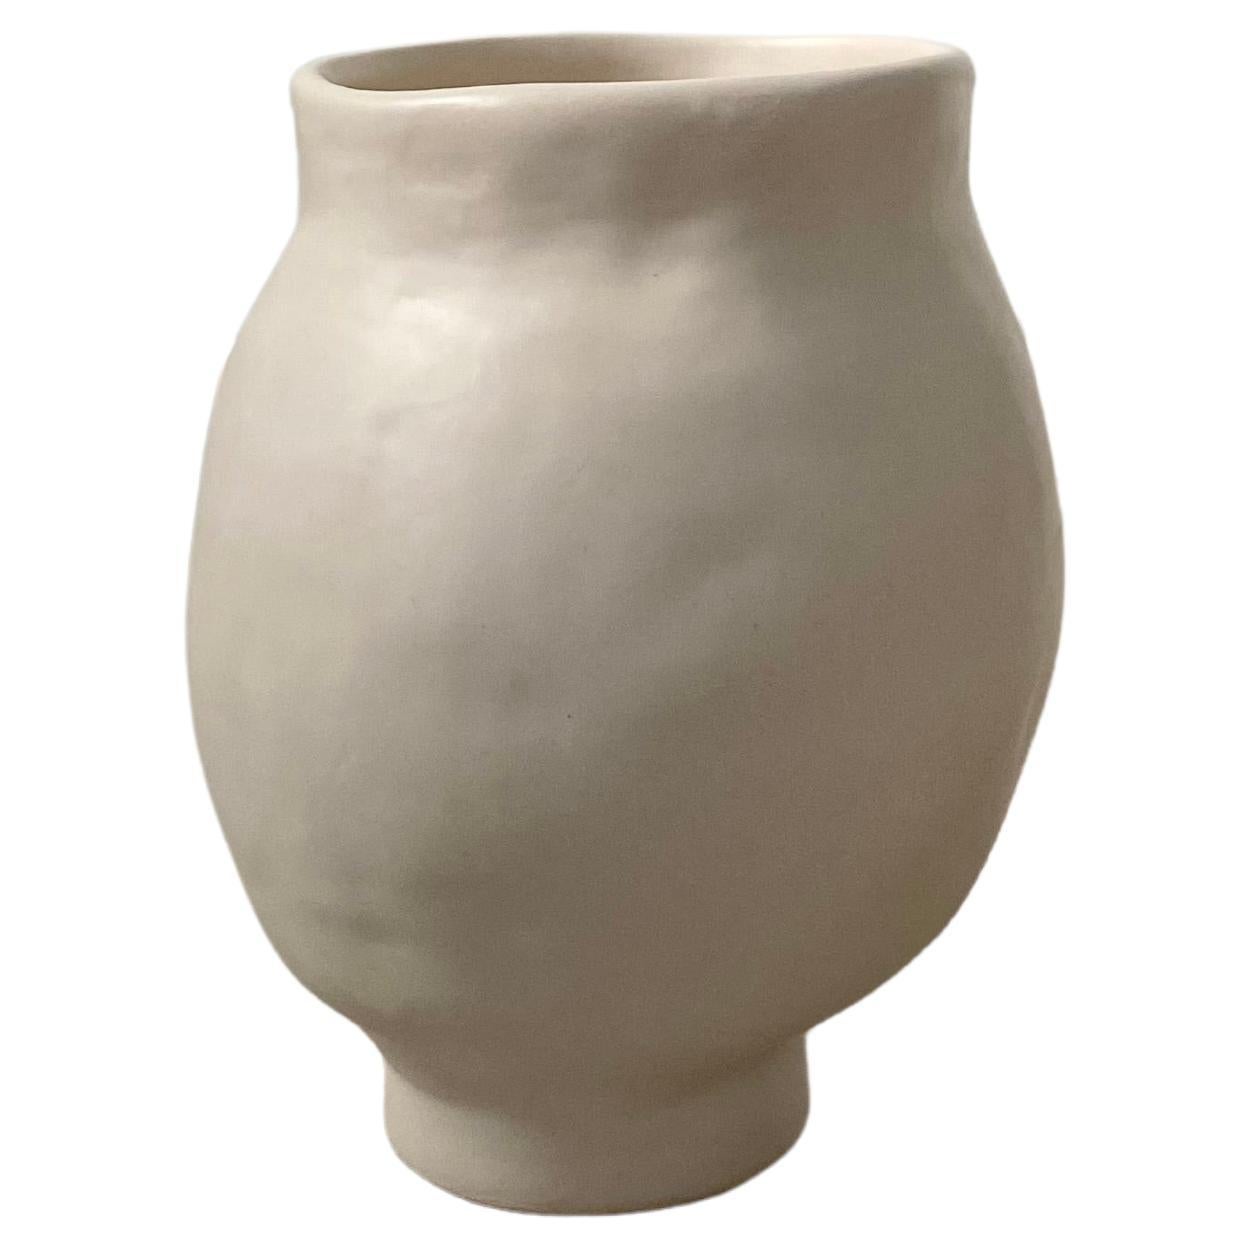 Große handgefertigte Keramikvase im neutralen Stil Wabi Sabi, atemberaubendes Gefäß